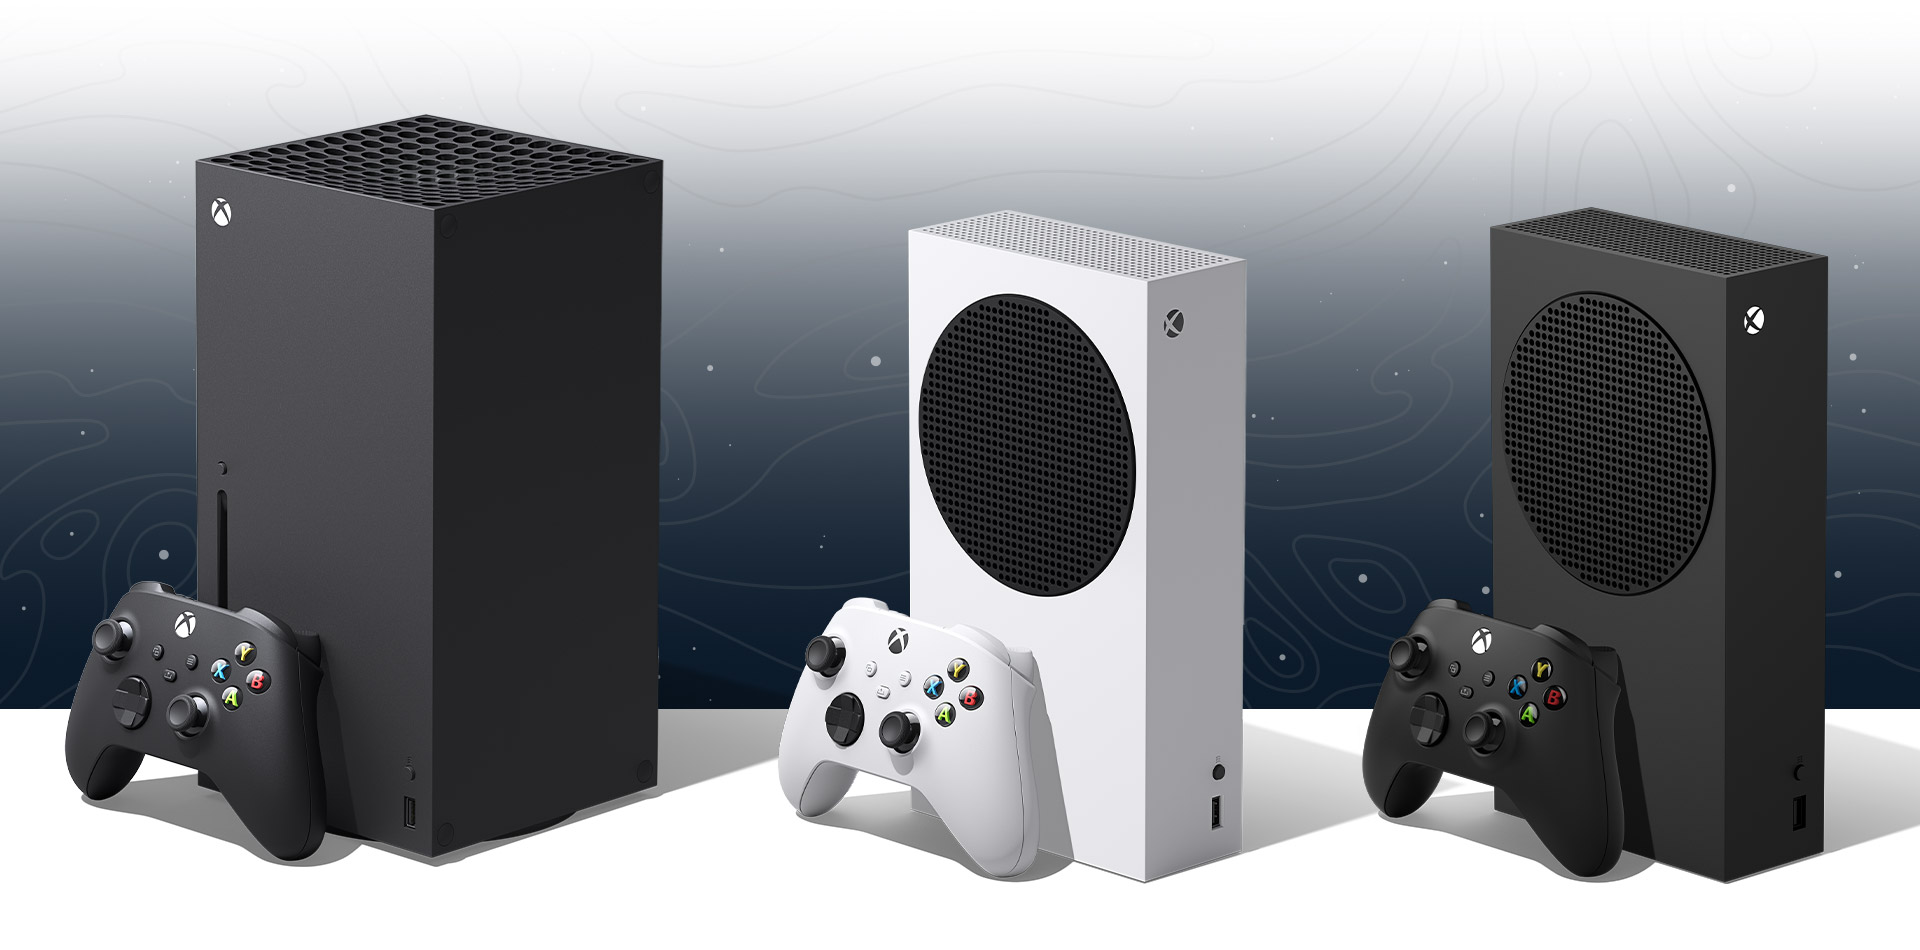 Zrzut ekranu z konsolą Xbox Series X, Xbox Series S i Xbox Series S — 1 TB z dopasowanymi czarnymi kontrolerami.